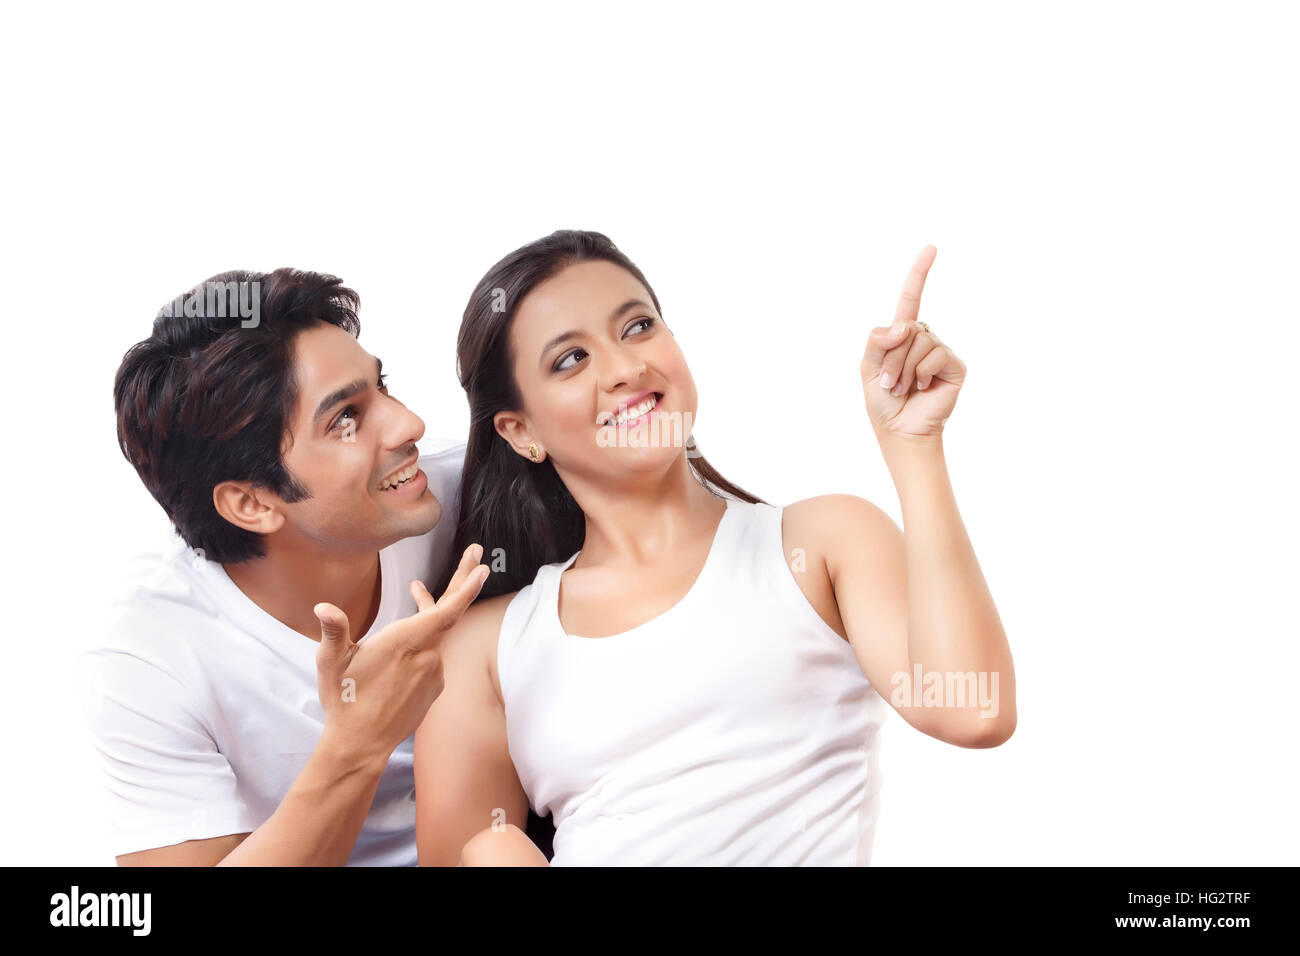 Feliz pareja apuntando con el dedo para mostrar algo Foto de stock